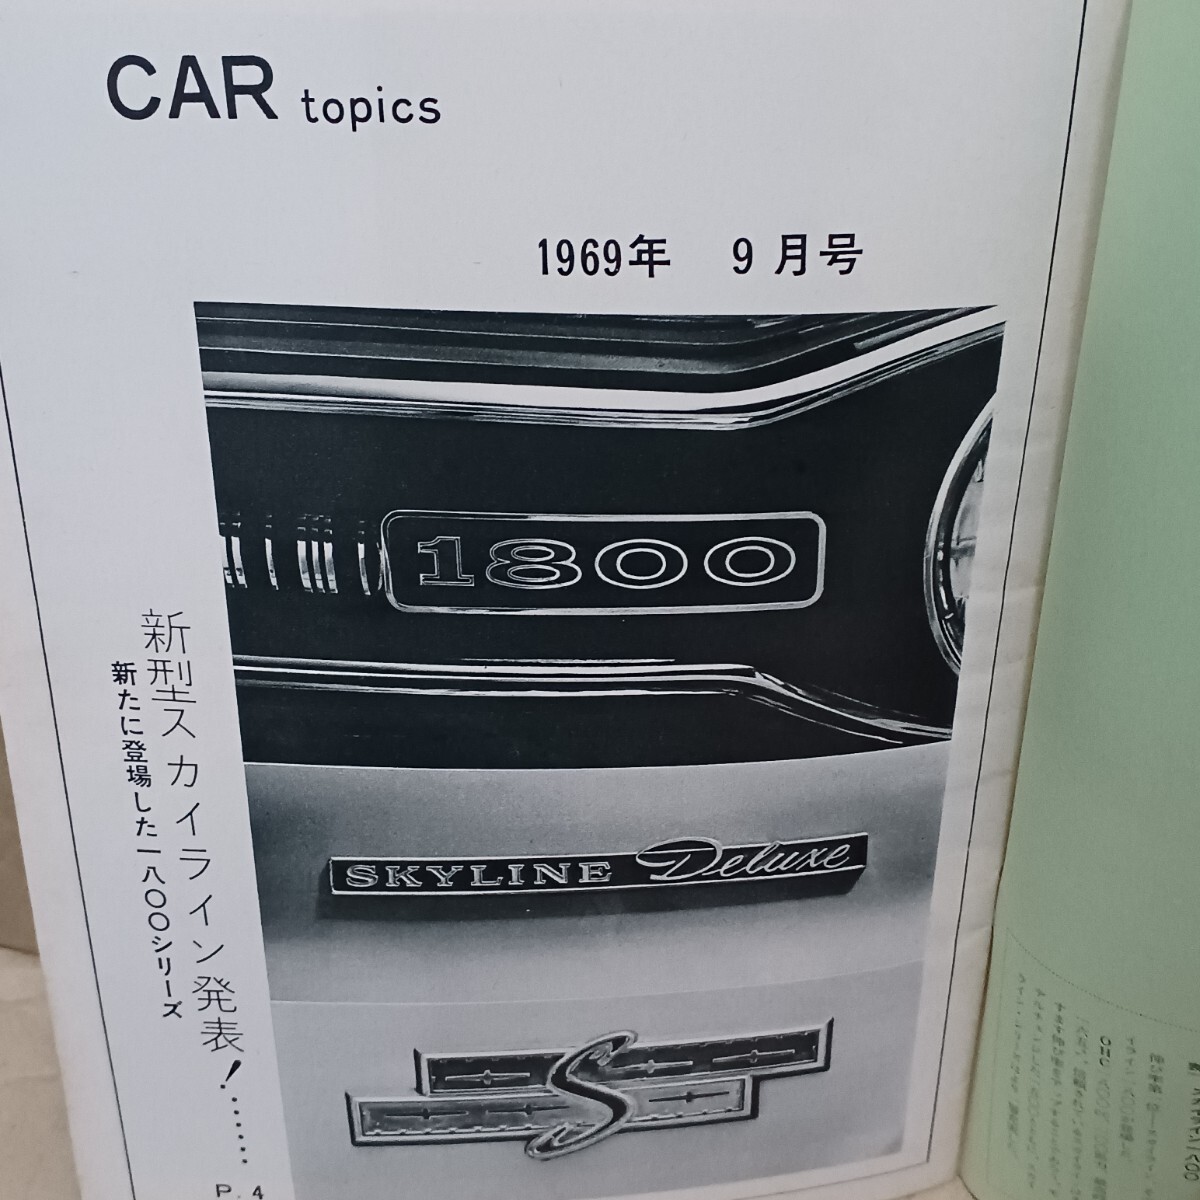  машина topics car topics Skyline 1800 новинка старый машина Showa 44 год 9 месяц номер Nissan Prince автомобиль 